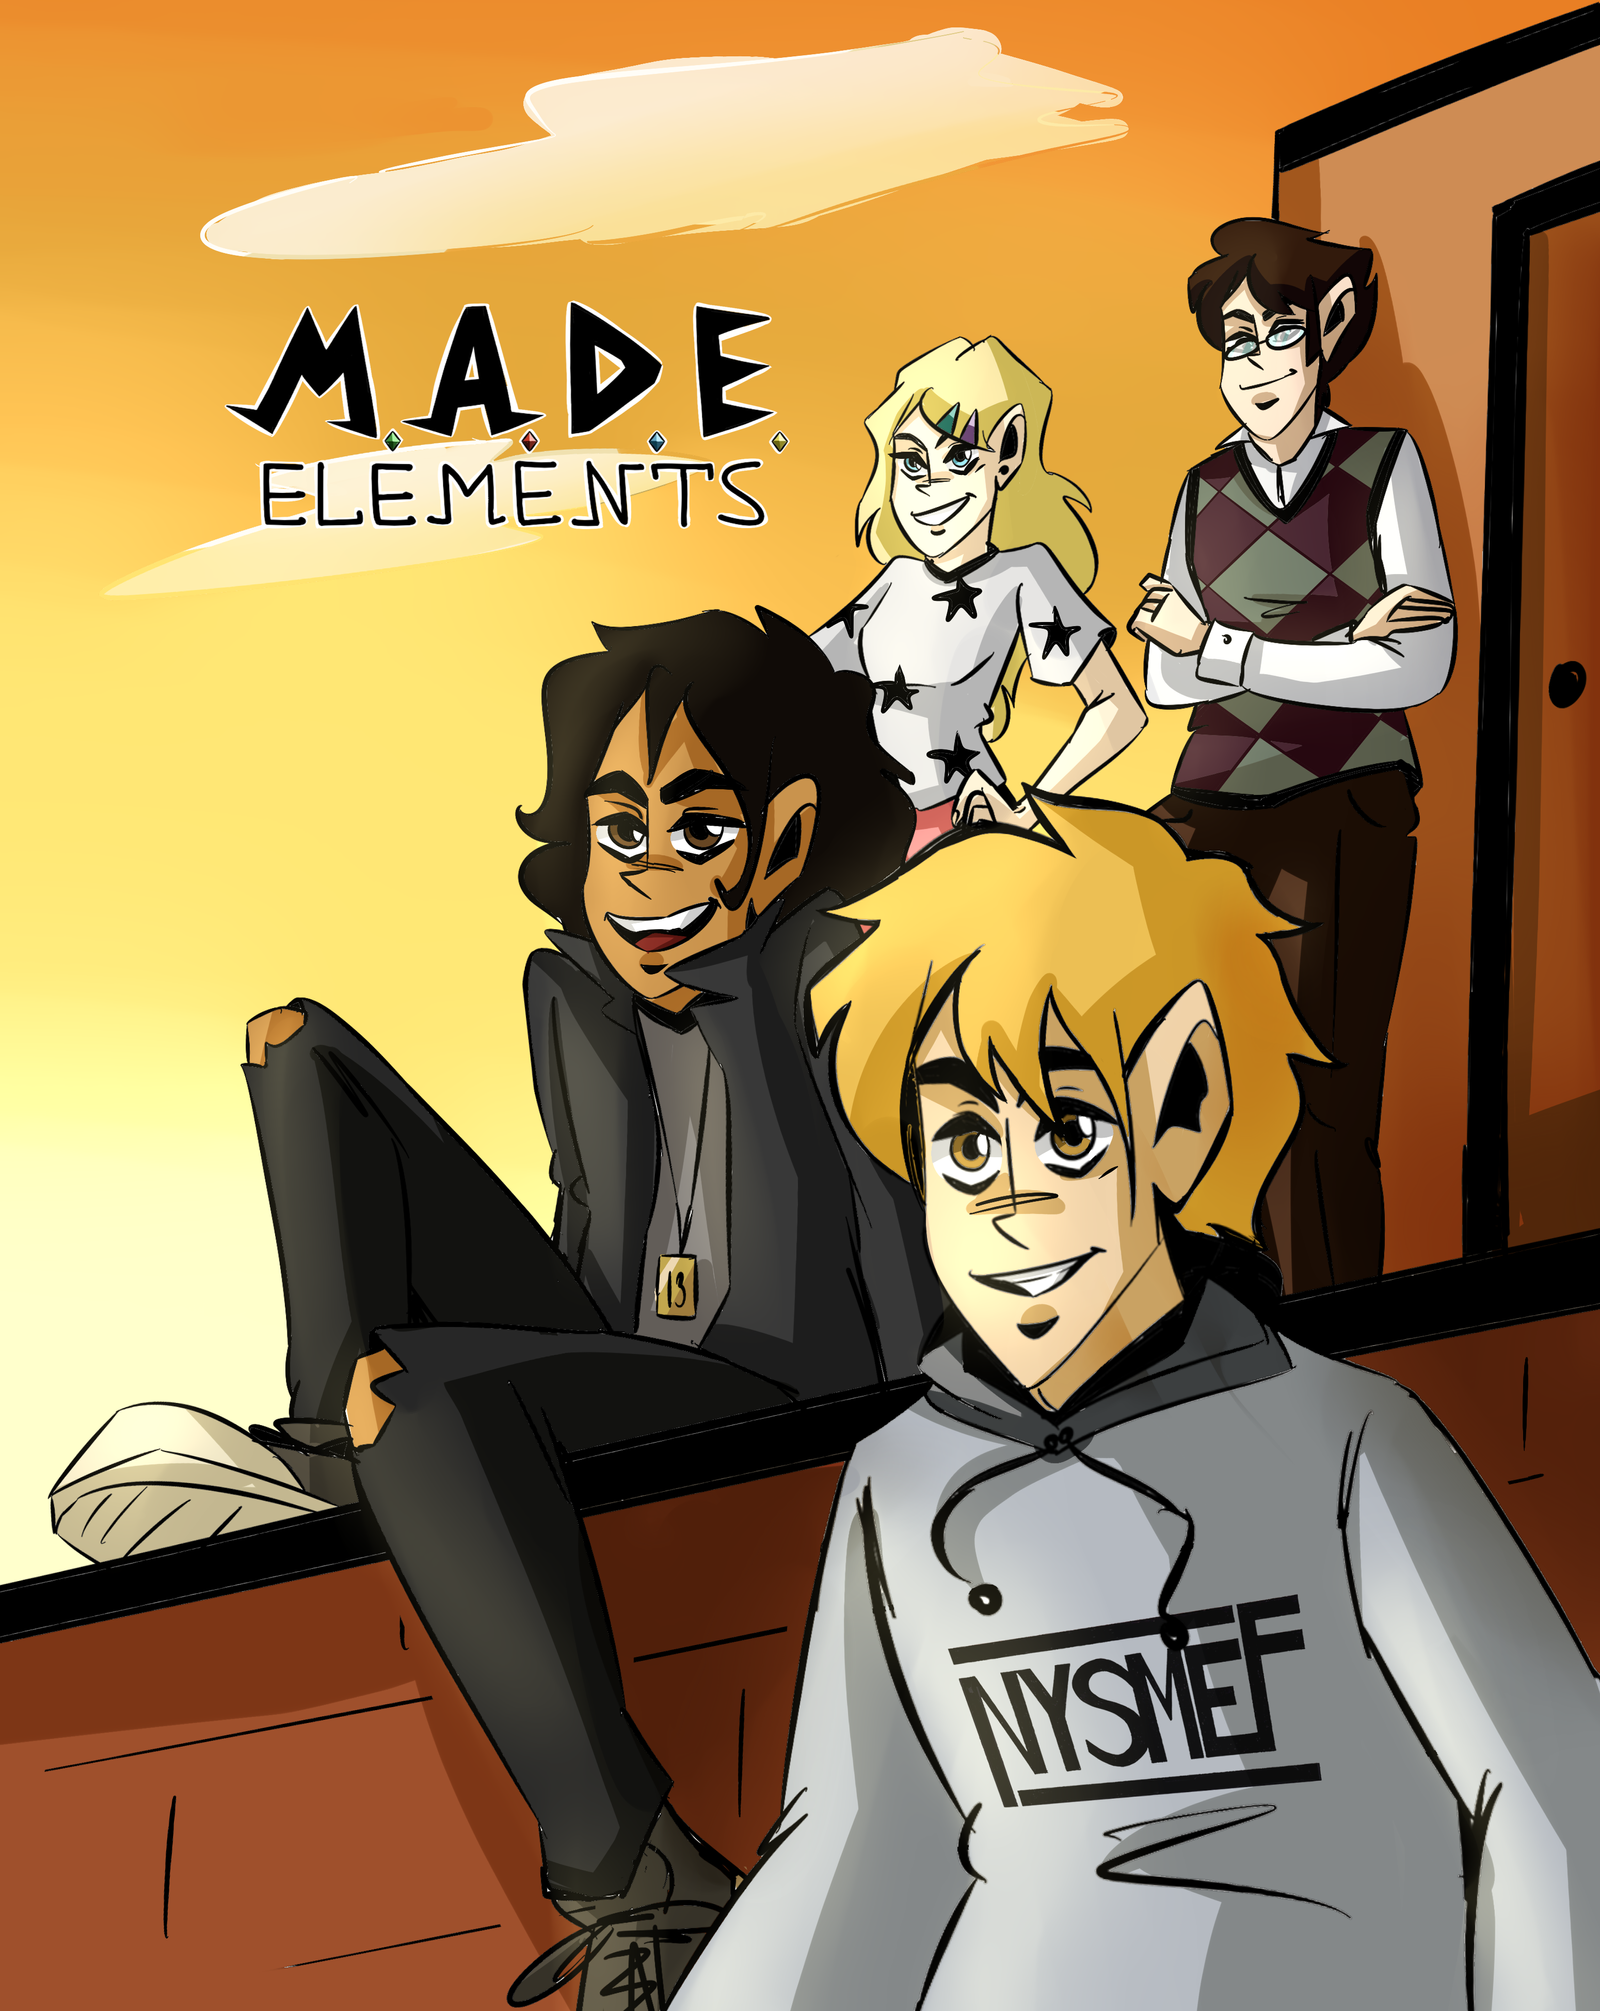 M. A. D. E. Elements